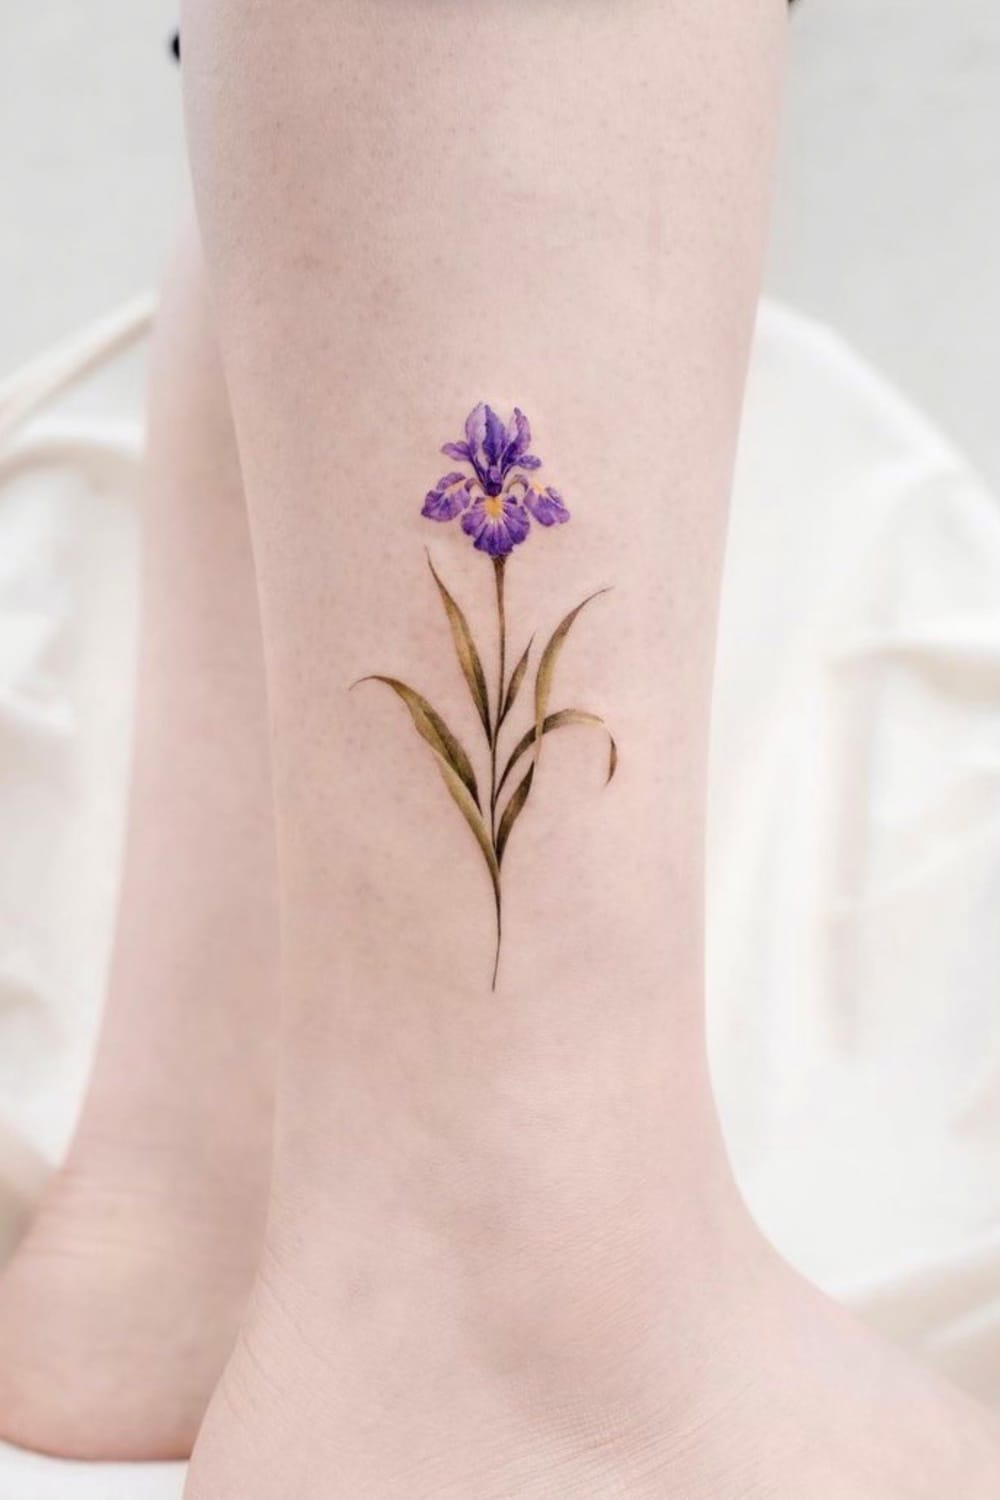 Small Iris tattoo